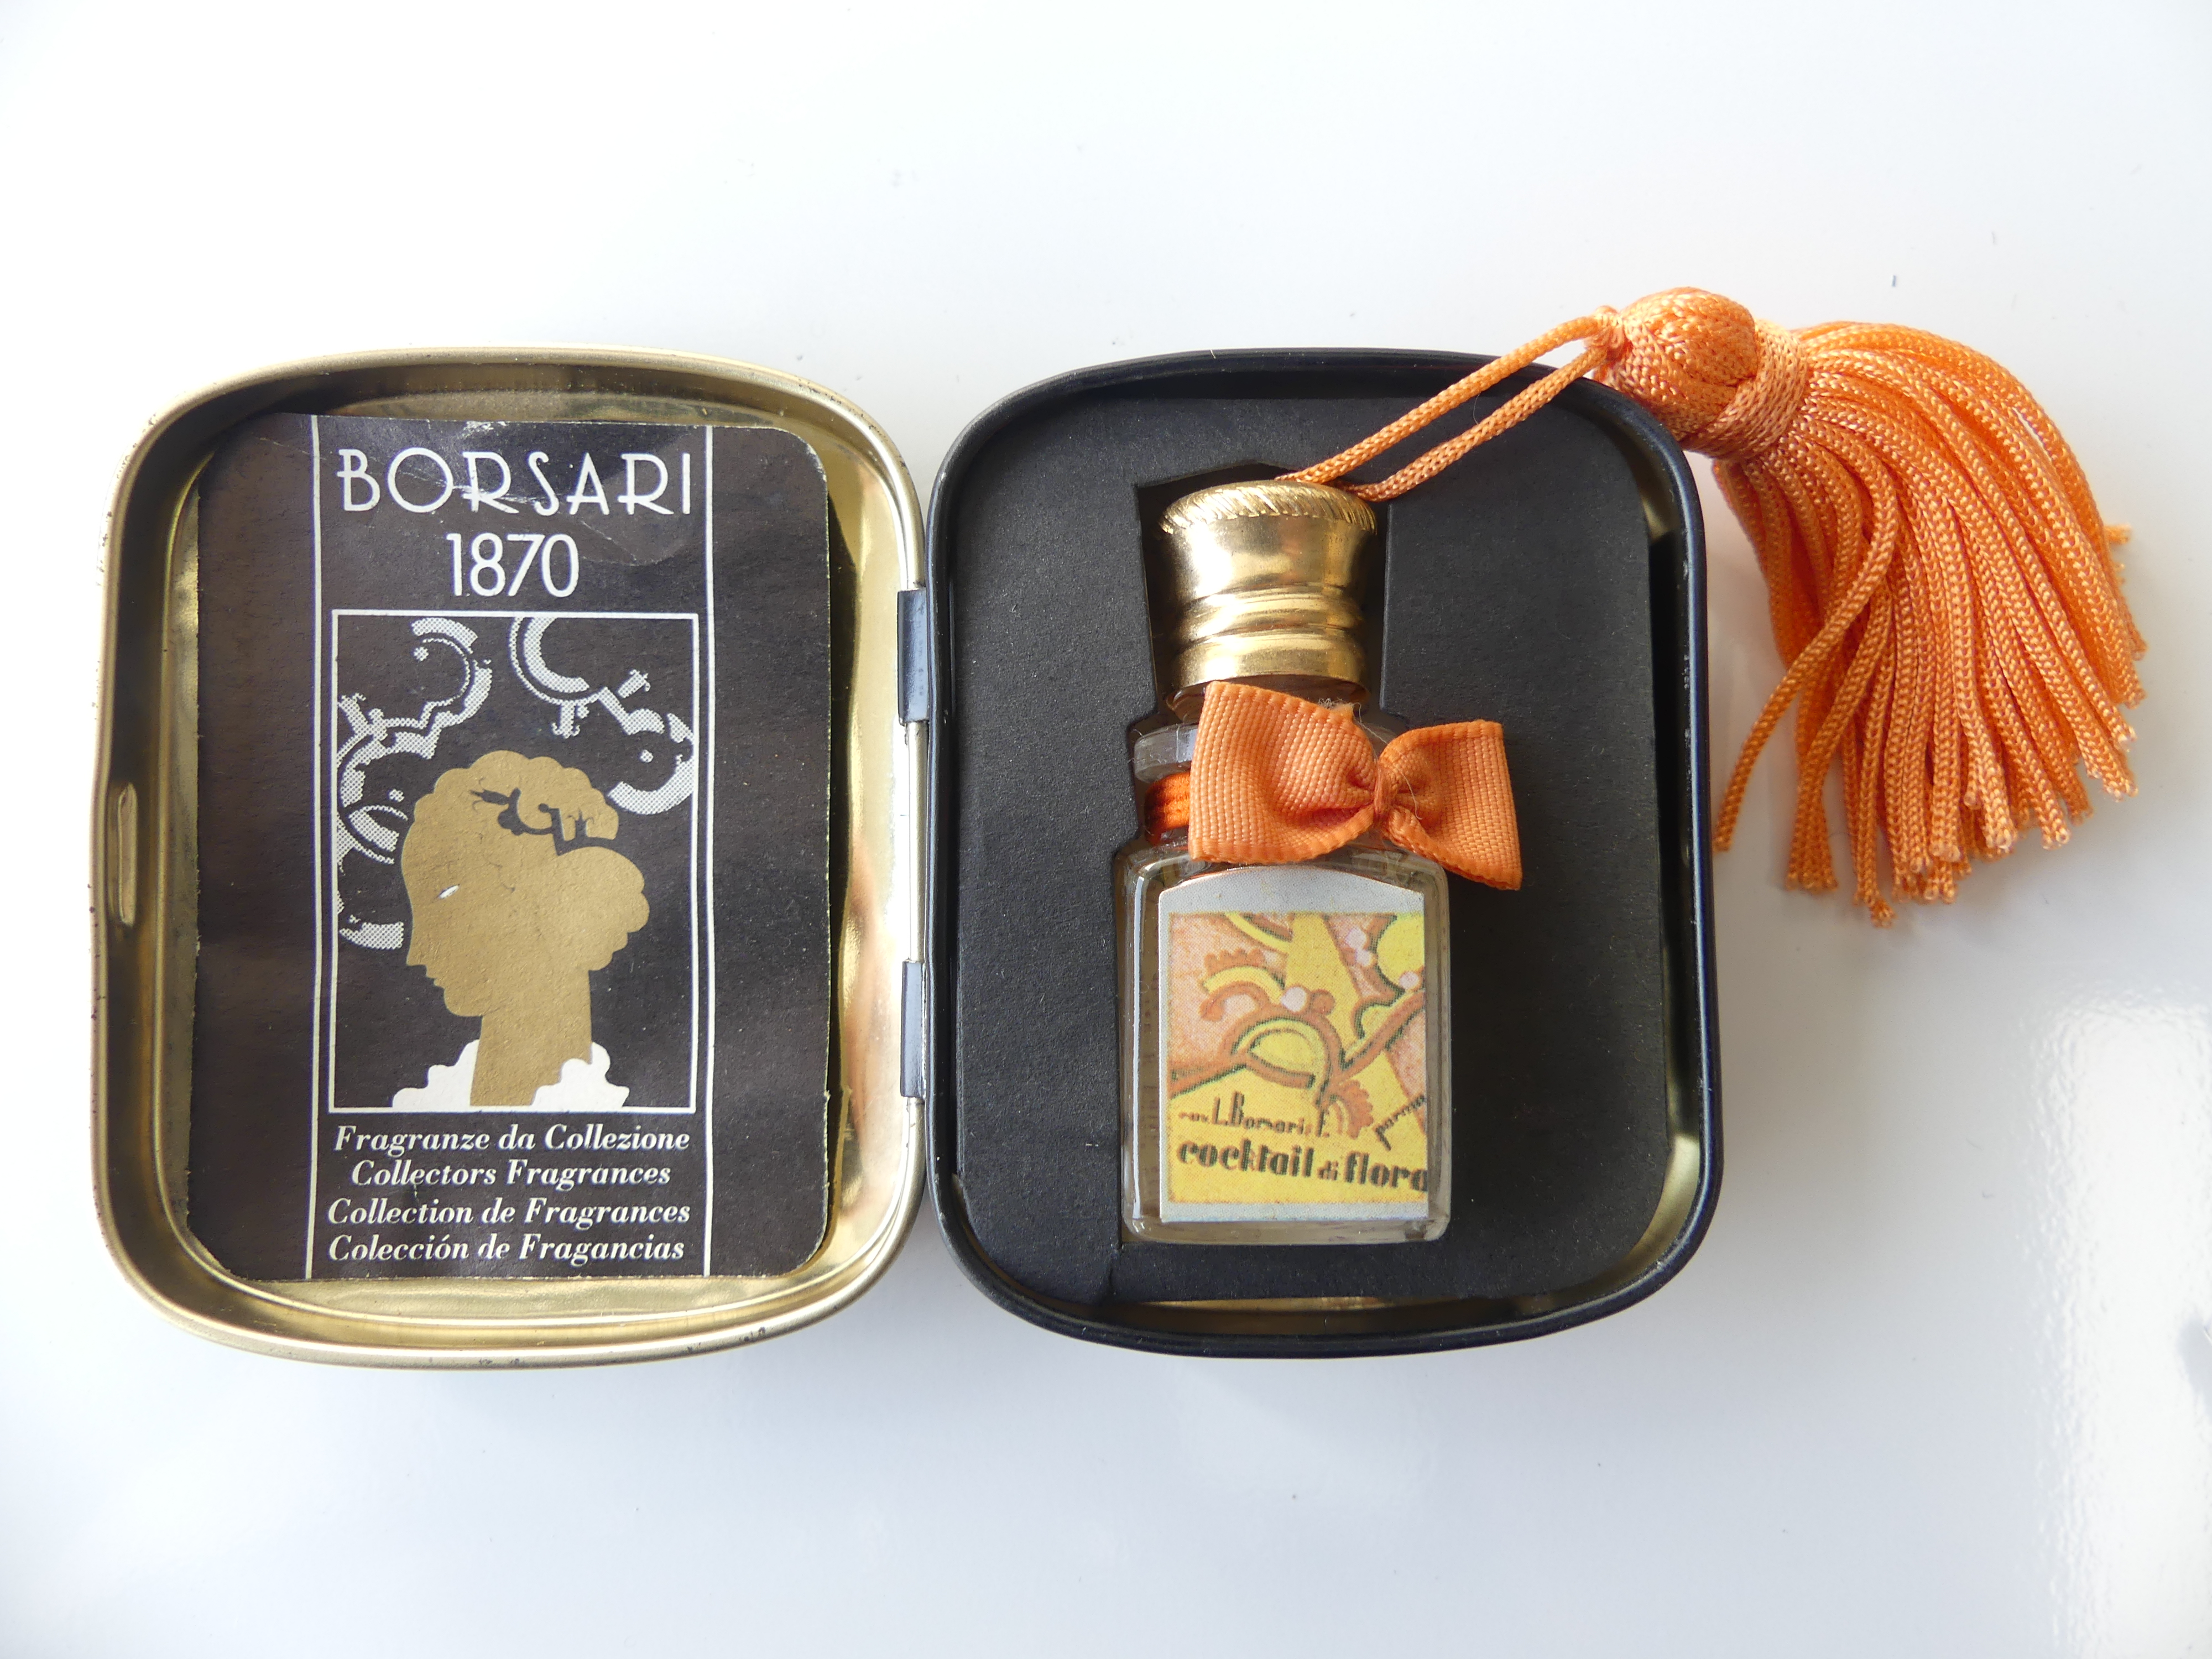 Borsari 1870 miniatuur in blik, Cocktail di flora met oranje strik   